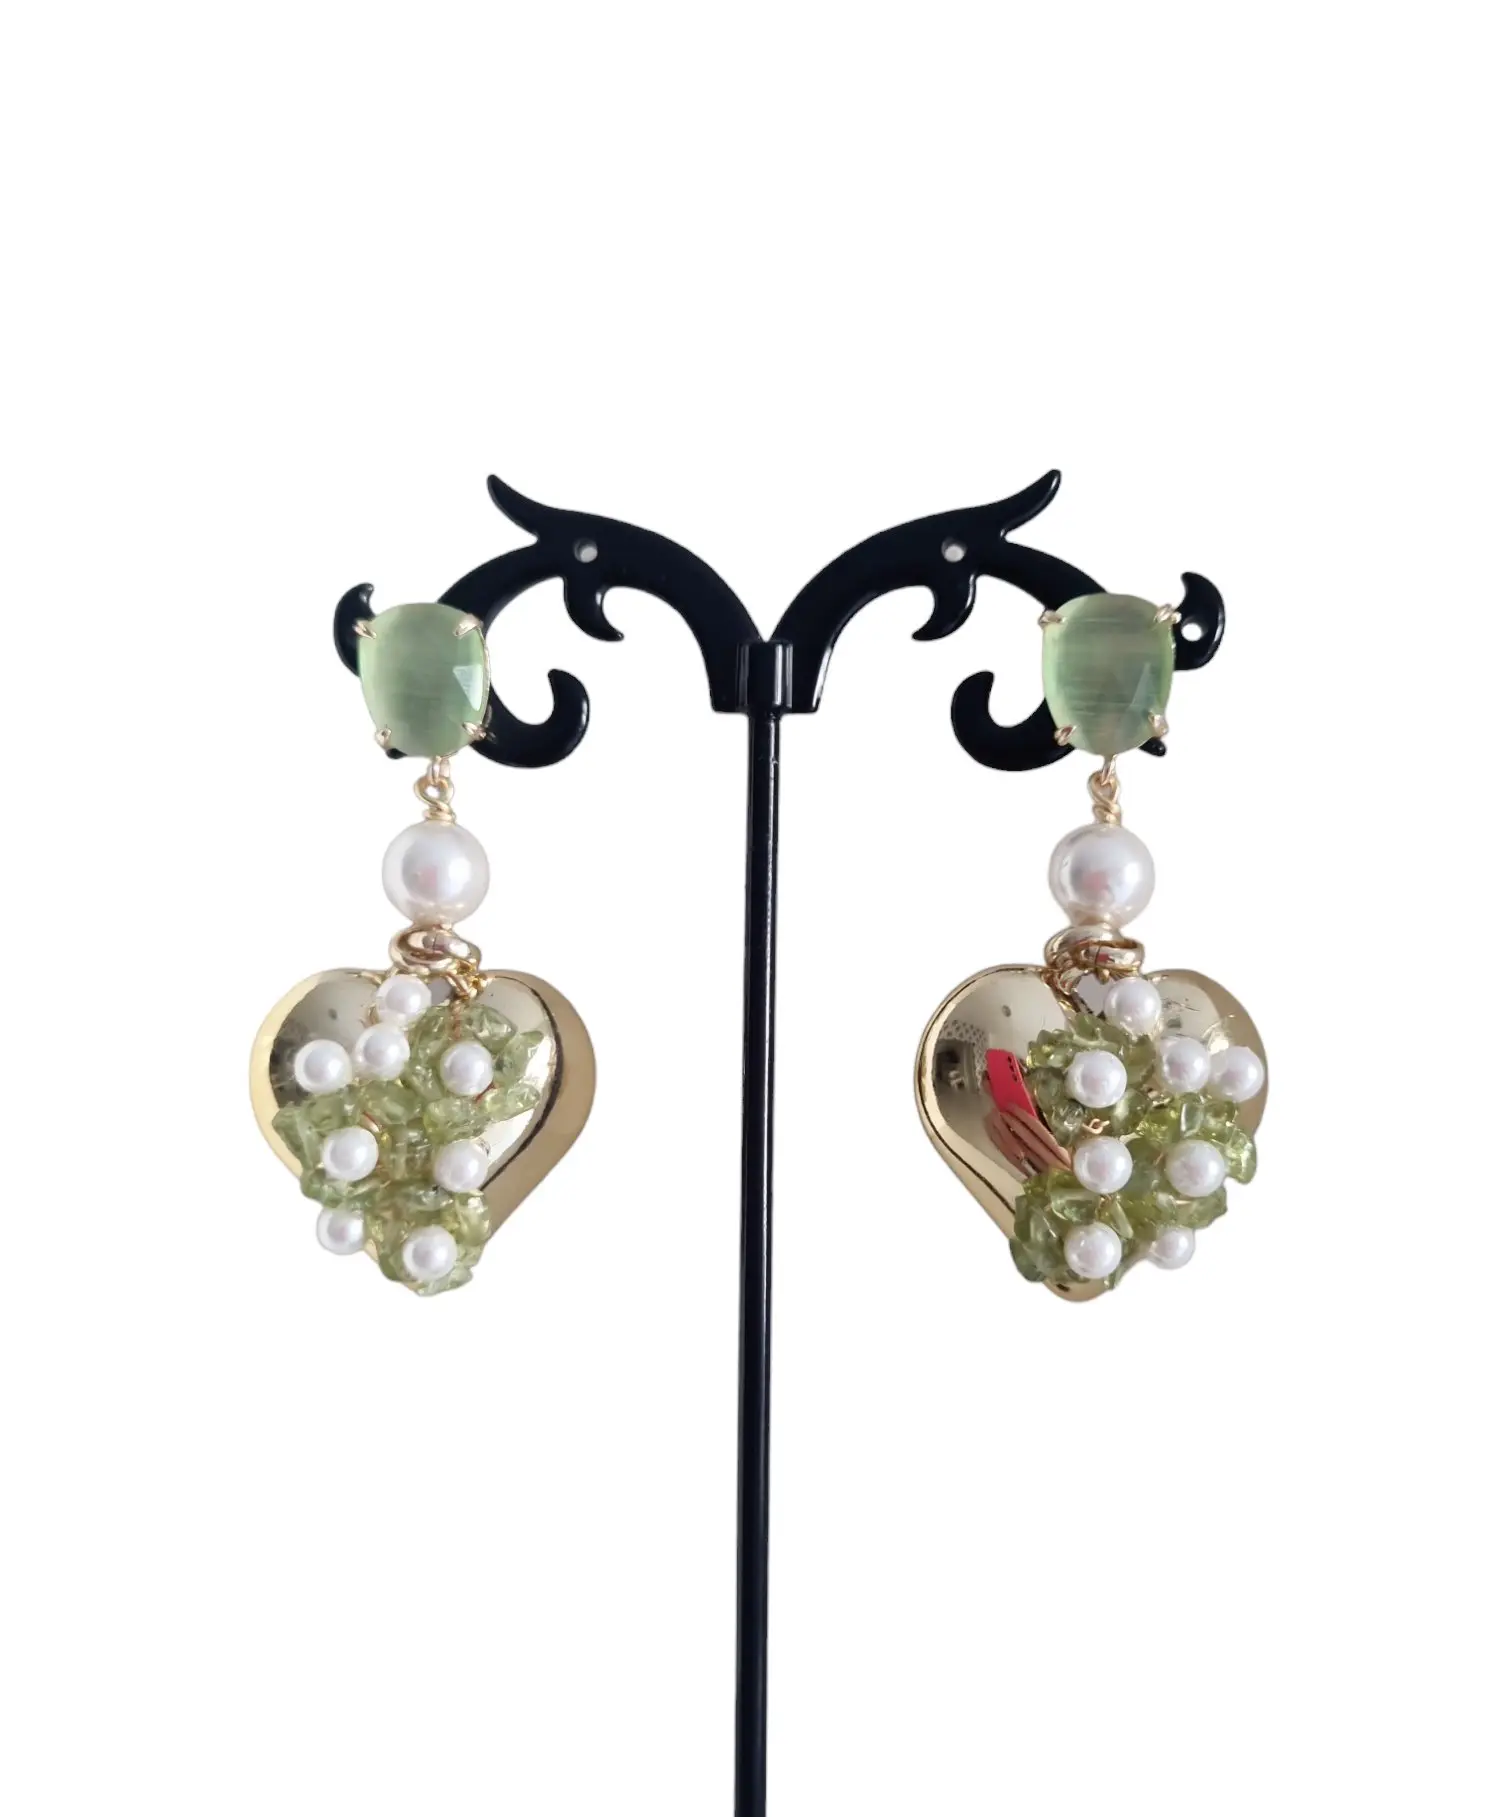 Ohrringe aus goldenem Herz, Quarz und Mallorca-Perlen. Länge 5 cm, Gewicht 8,1 g